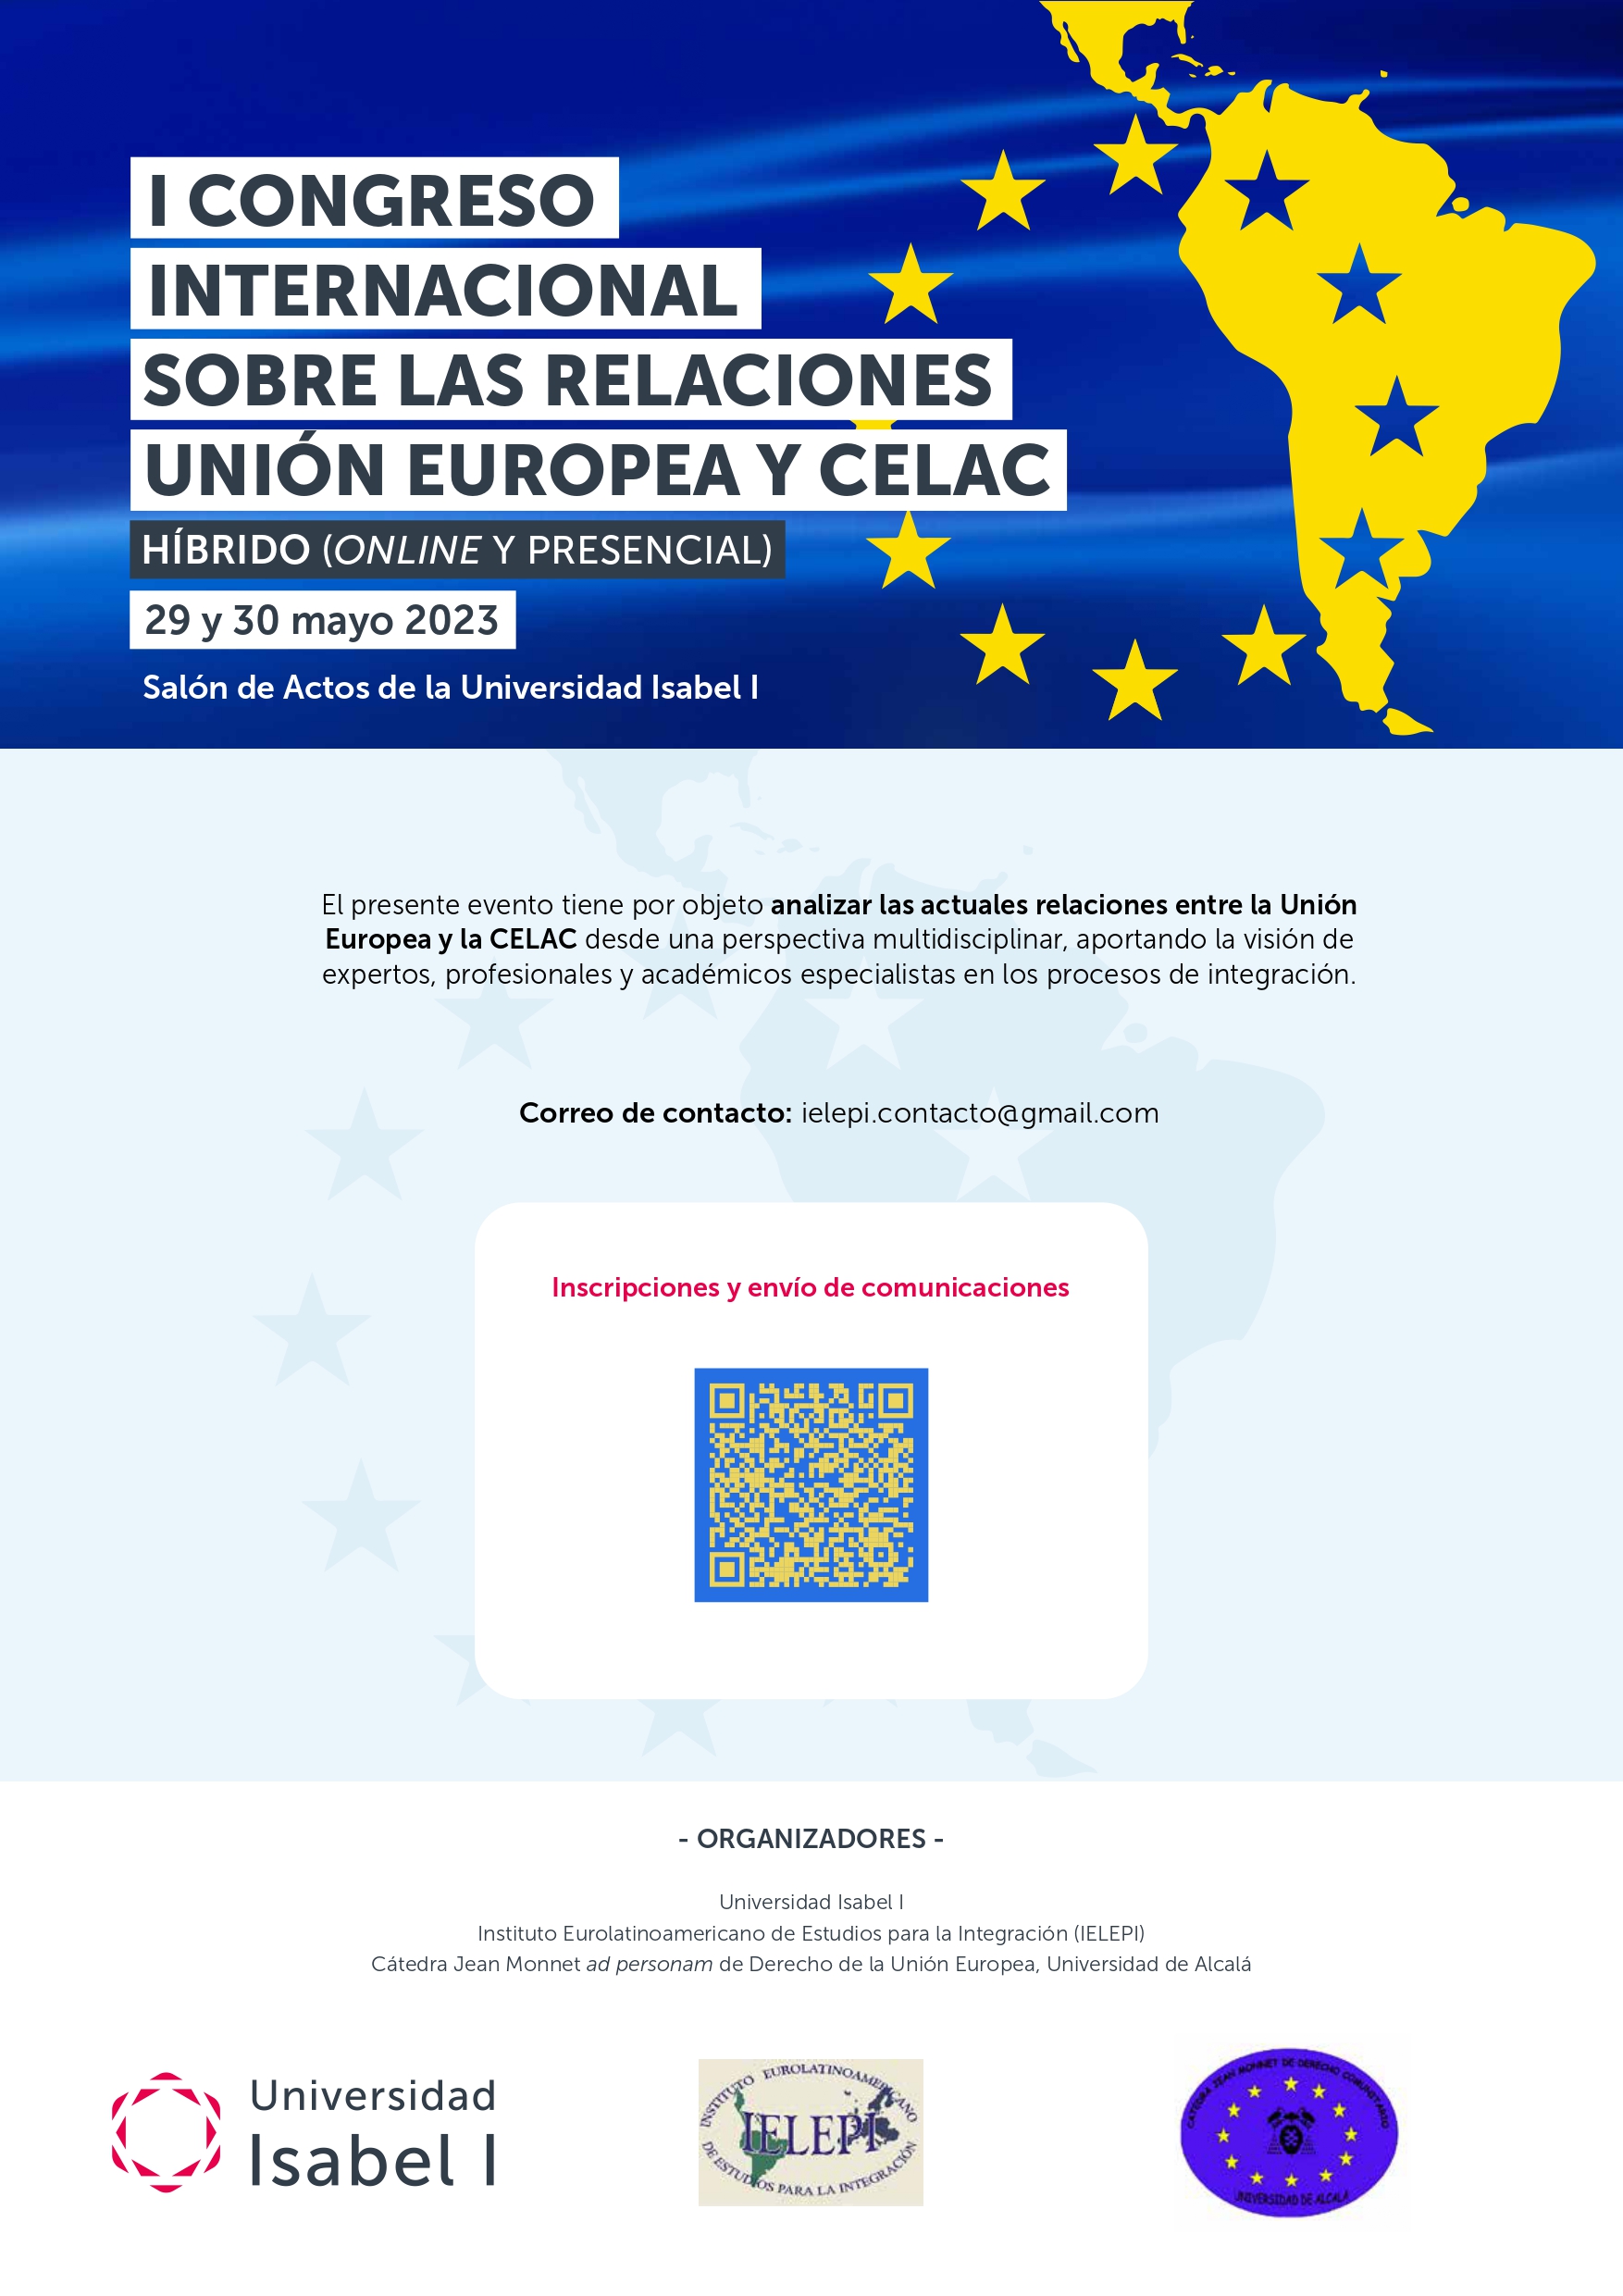 I CONGRESO INTERNACIONAL SOBRE LAS RELACIONES UNIÓN EUROPEA Y CELAC-  HÍBRIDO (ONLINE Y PRESENCIAL) 29 y 30 mayo 2023